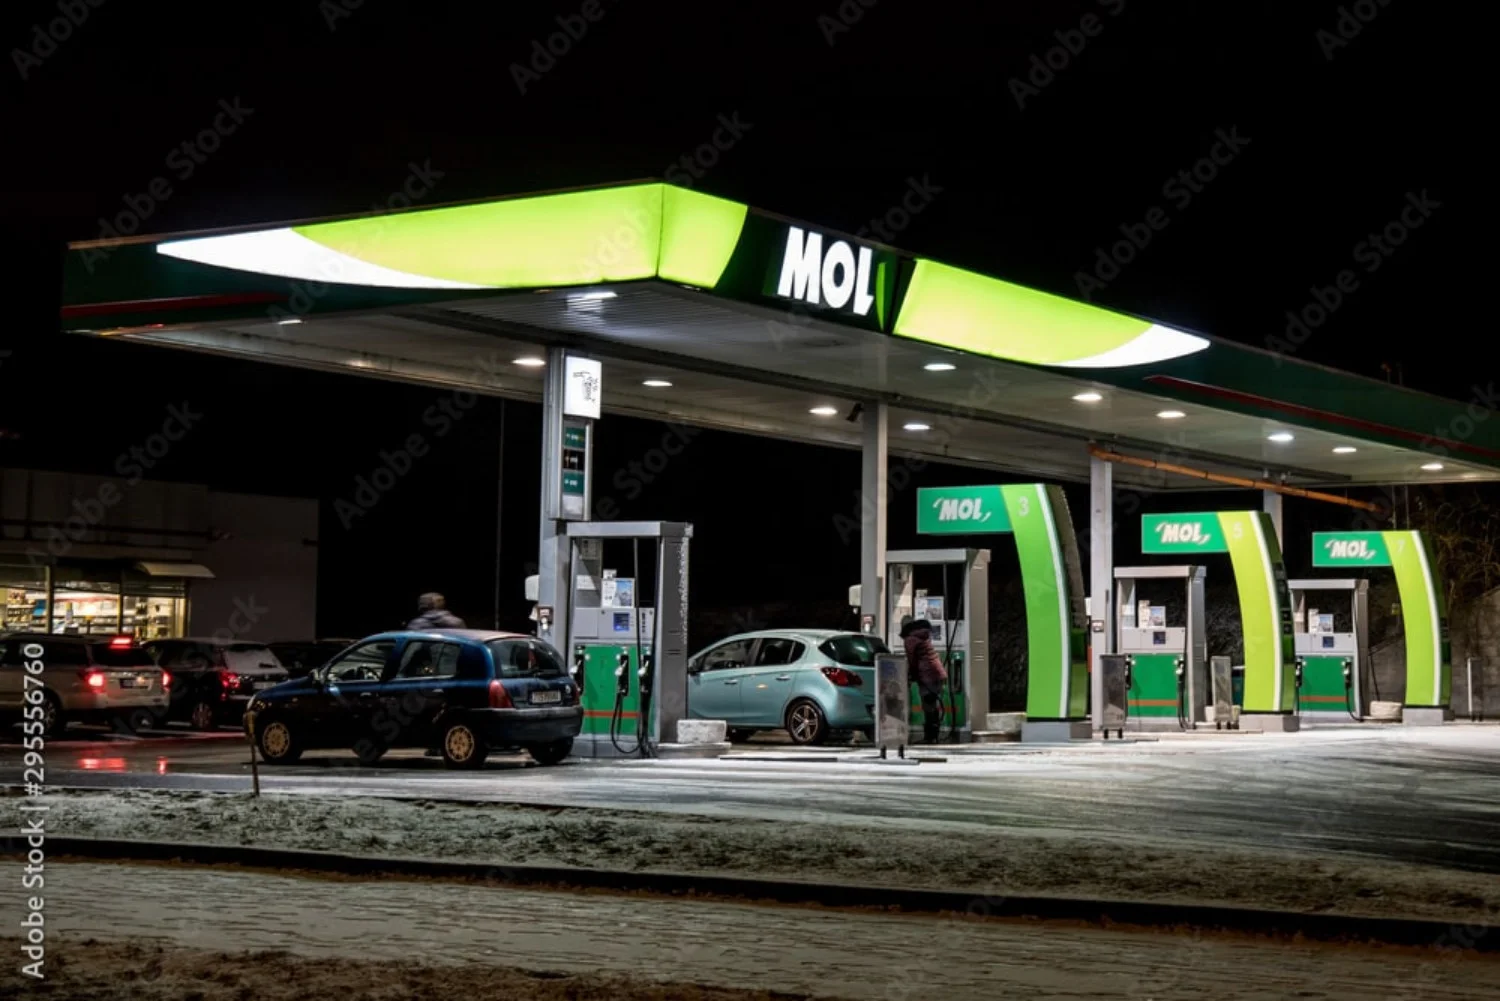 Benzinăriile MOL oferă o gamă de servicii suplimentare față de furnizarea de combustibil, făcând călătoriile cu mașina mai convenabile.